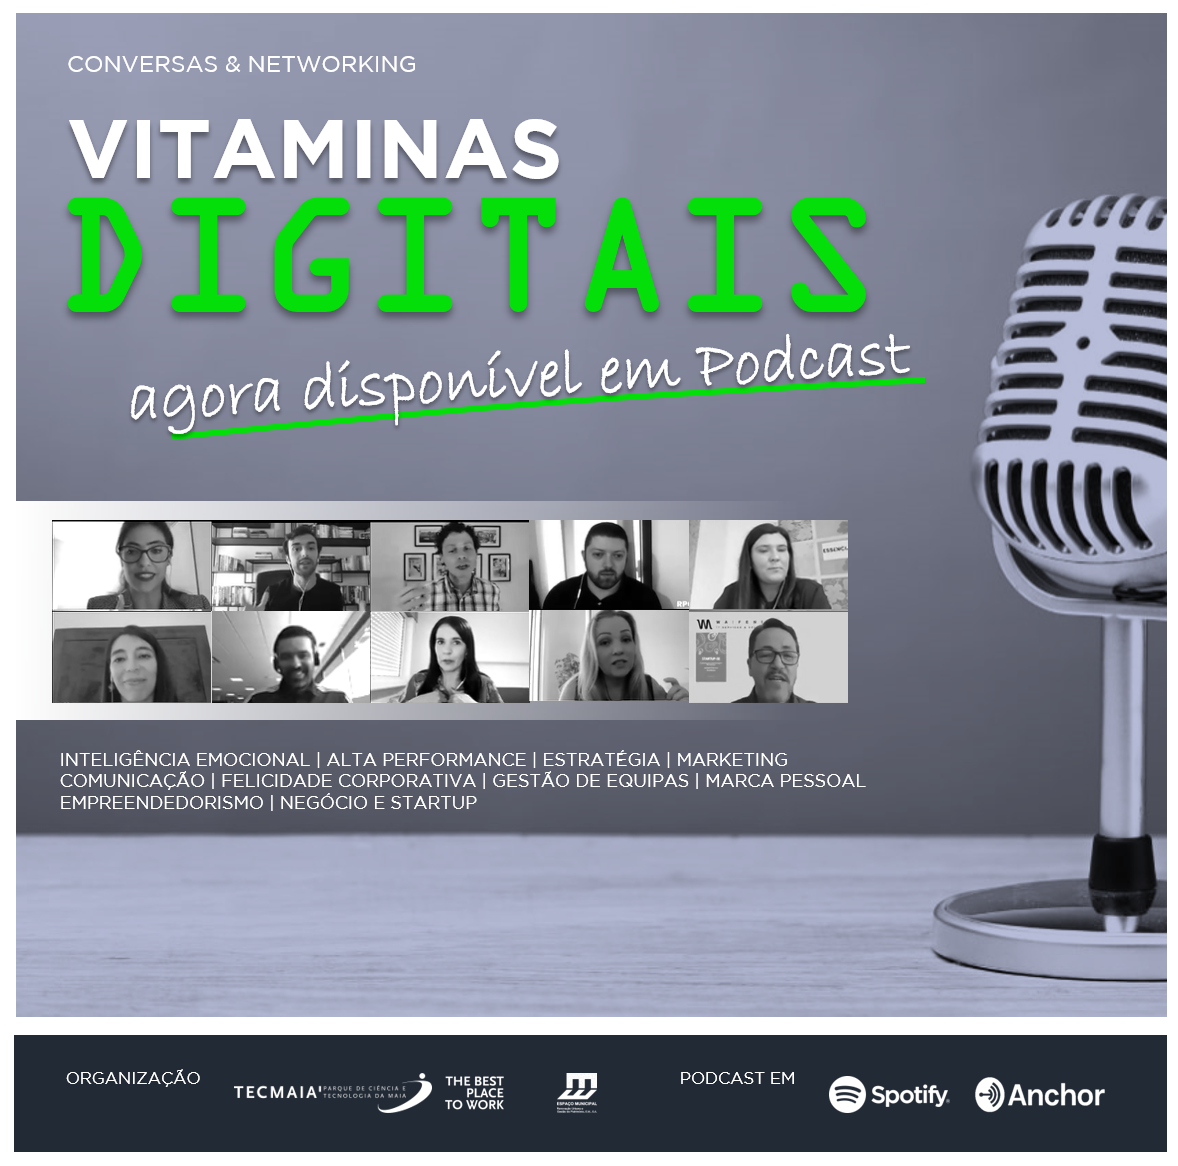 Encontre as Vitaminas Digitais do TECMAIA em Podcast